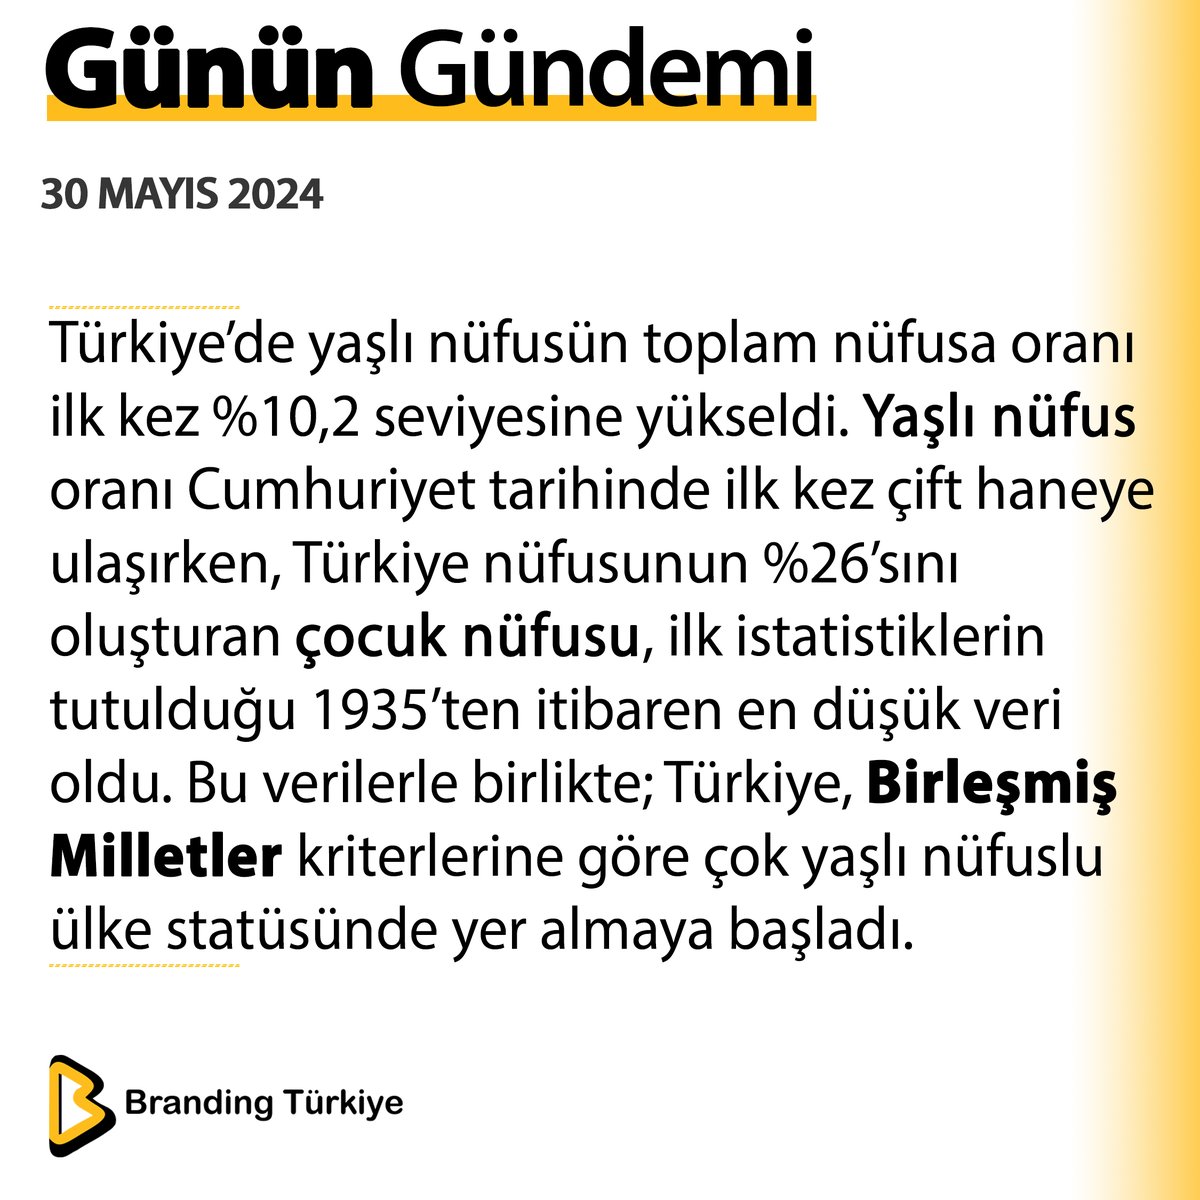 #30Mayıs2024

Türkiye’de yaşlı nüfusün toplam nüfusa oranı ilk kez %10,2 seviyesine yükseldi. 

▶ brandingturkiye.com
#BrandingTürkiye #Haberler #Cumhuriyet #Nüfus #BirleşmişMilletler #YaşlıNüfus #SonDakika